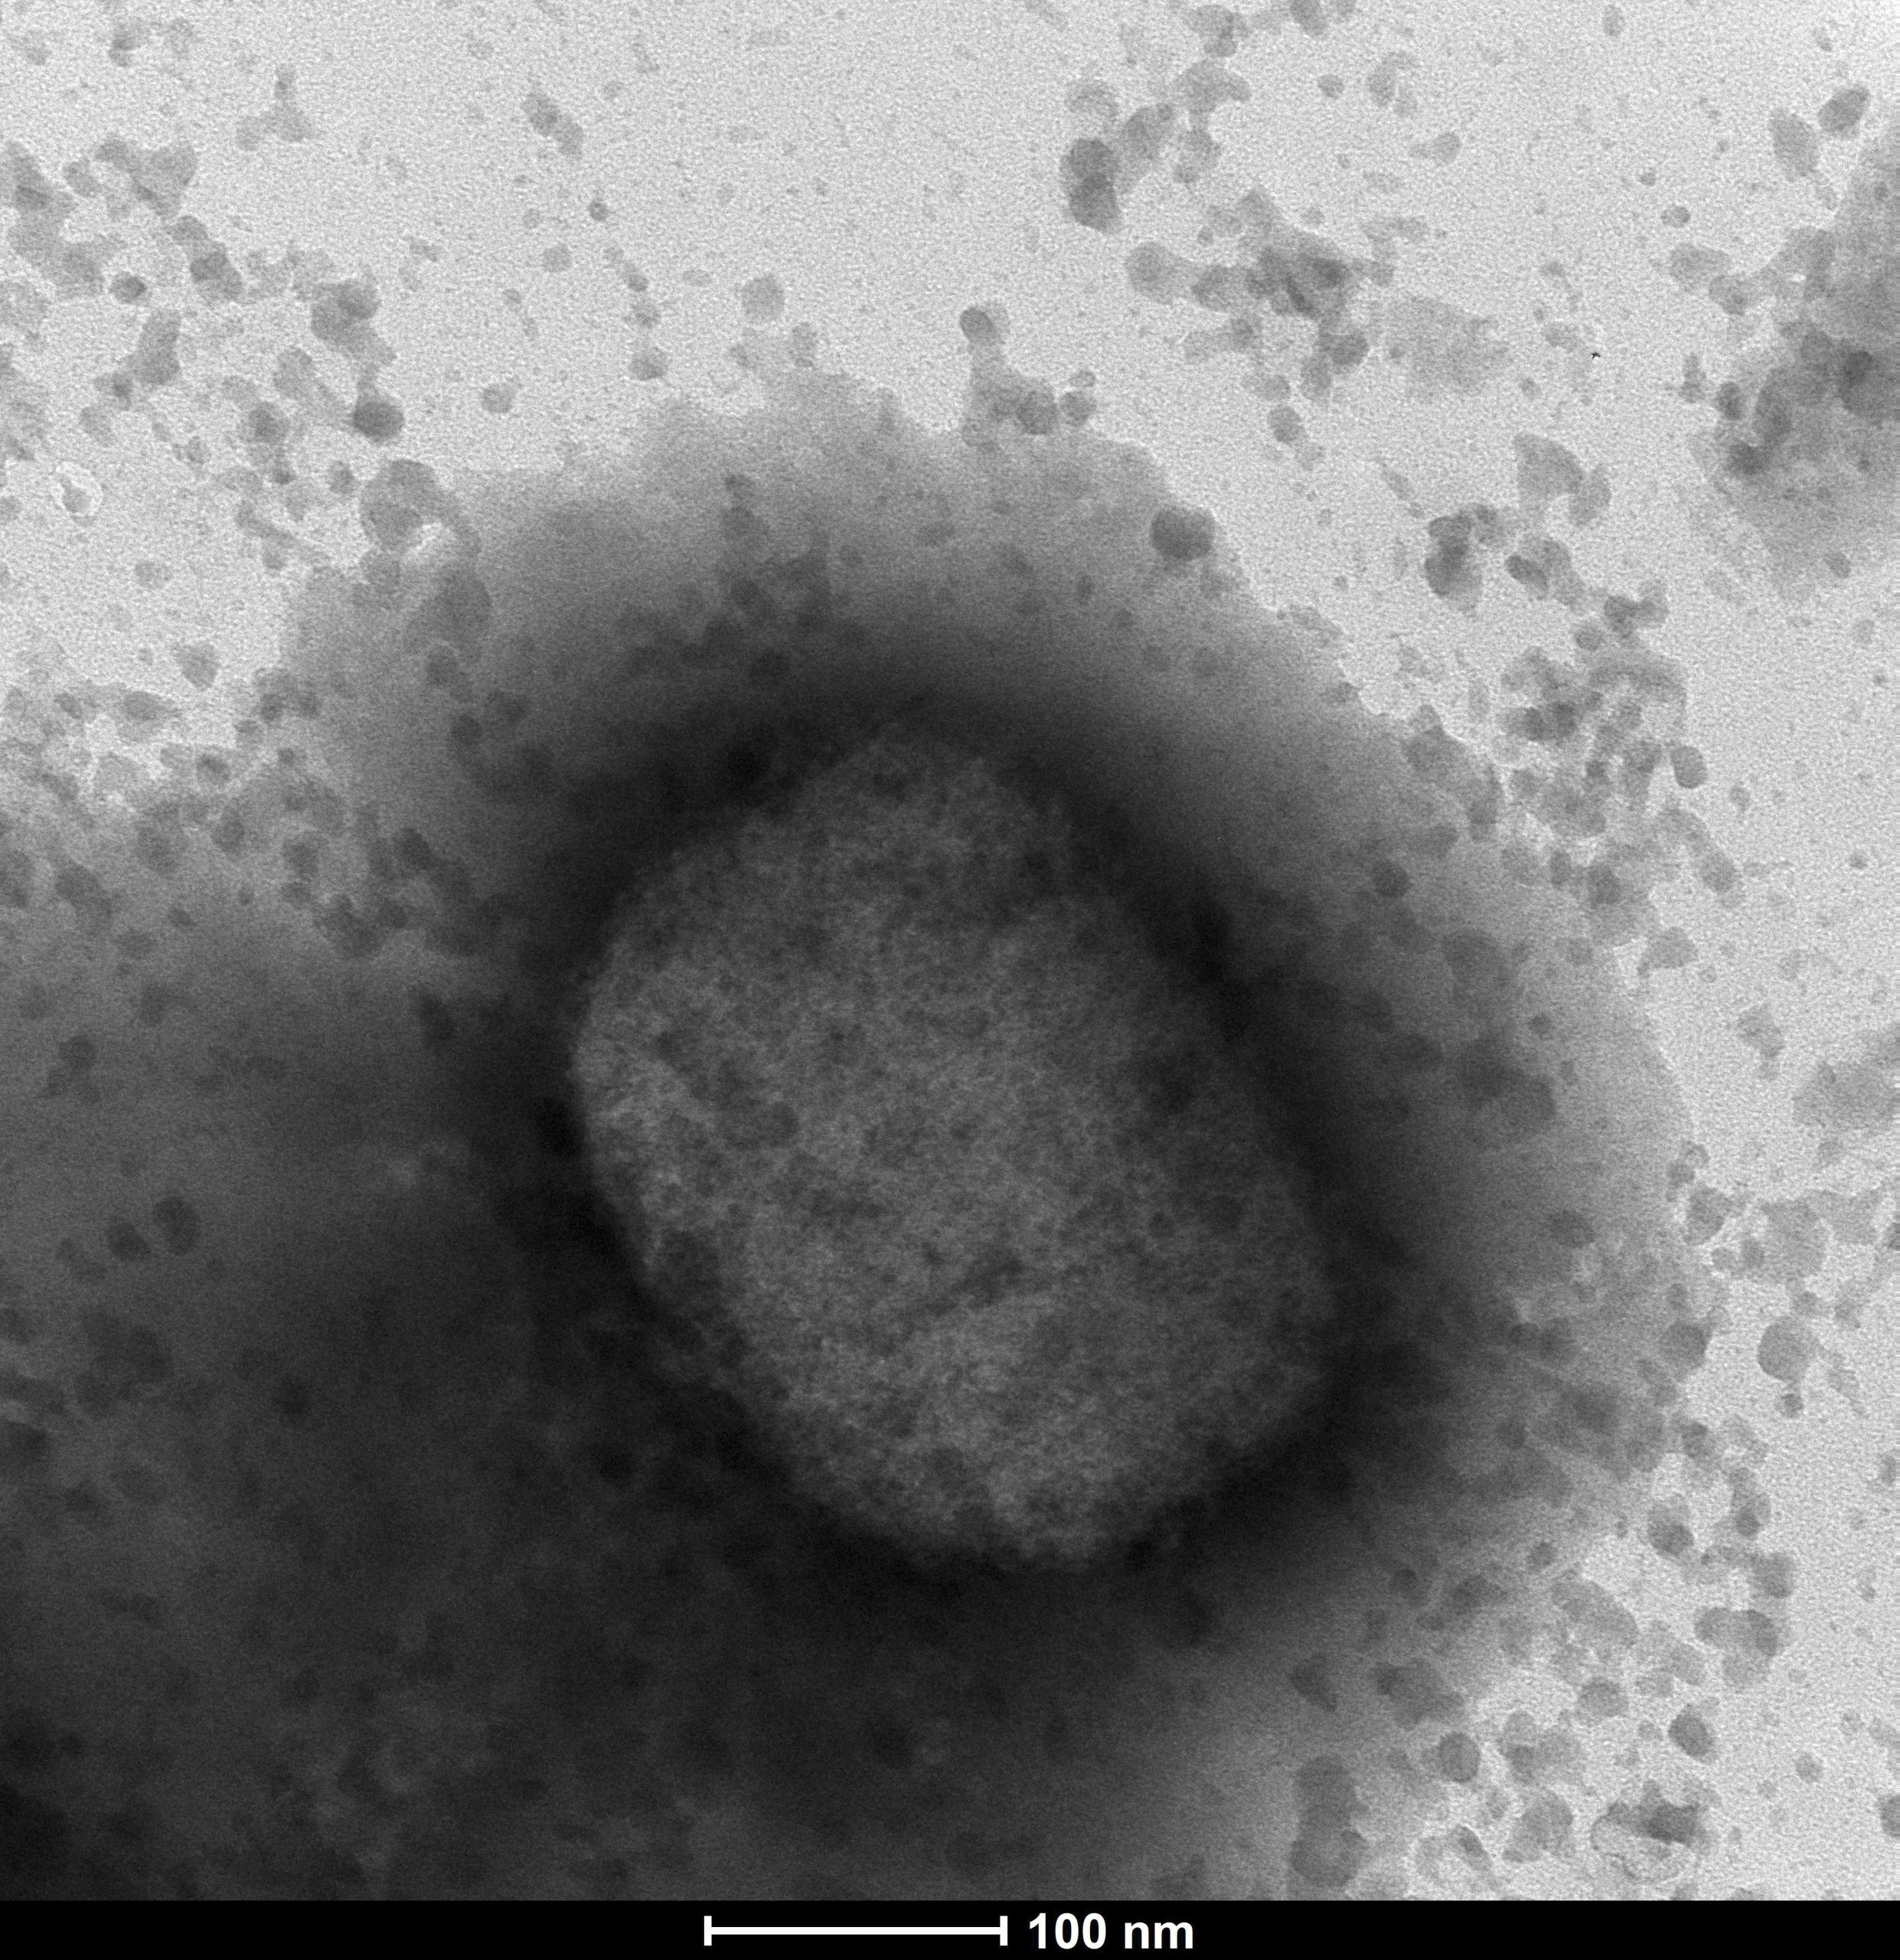 electronic microscope image of monkeypox virus